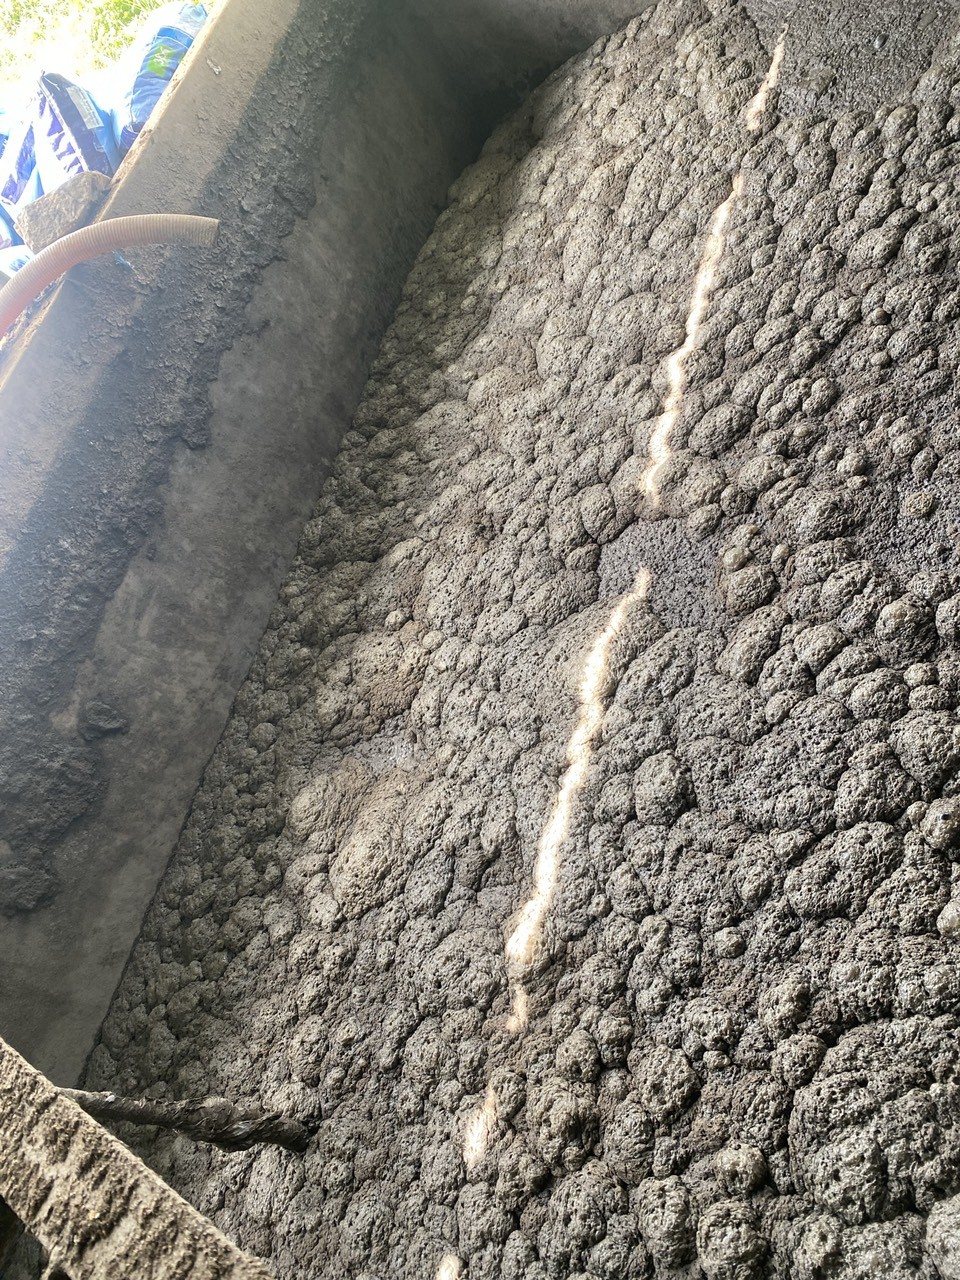 Mô hình nuôi trùn quế từ chất thải chăn nuôi của “Tú Sẹp” ở Thanh Chương (Nghệ An): Hướng đi mới cho nền nông nghiệp tuần hoàn